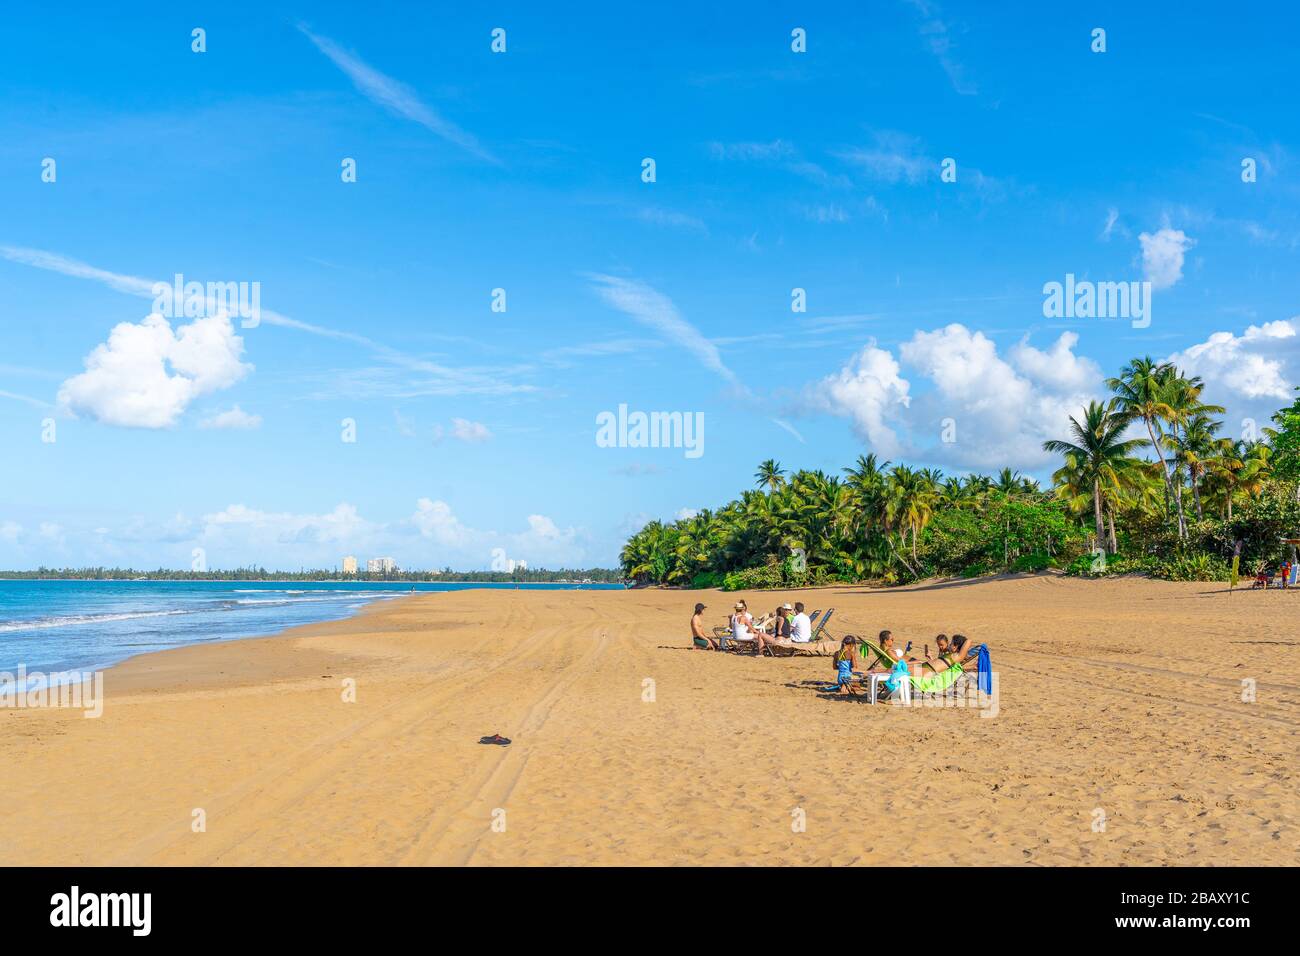 Rio Grande, Puerto Rico - March 28, 2019: Beach in Rio Grande, Puerto Rico. Stock Photo